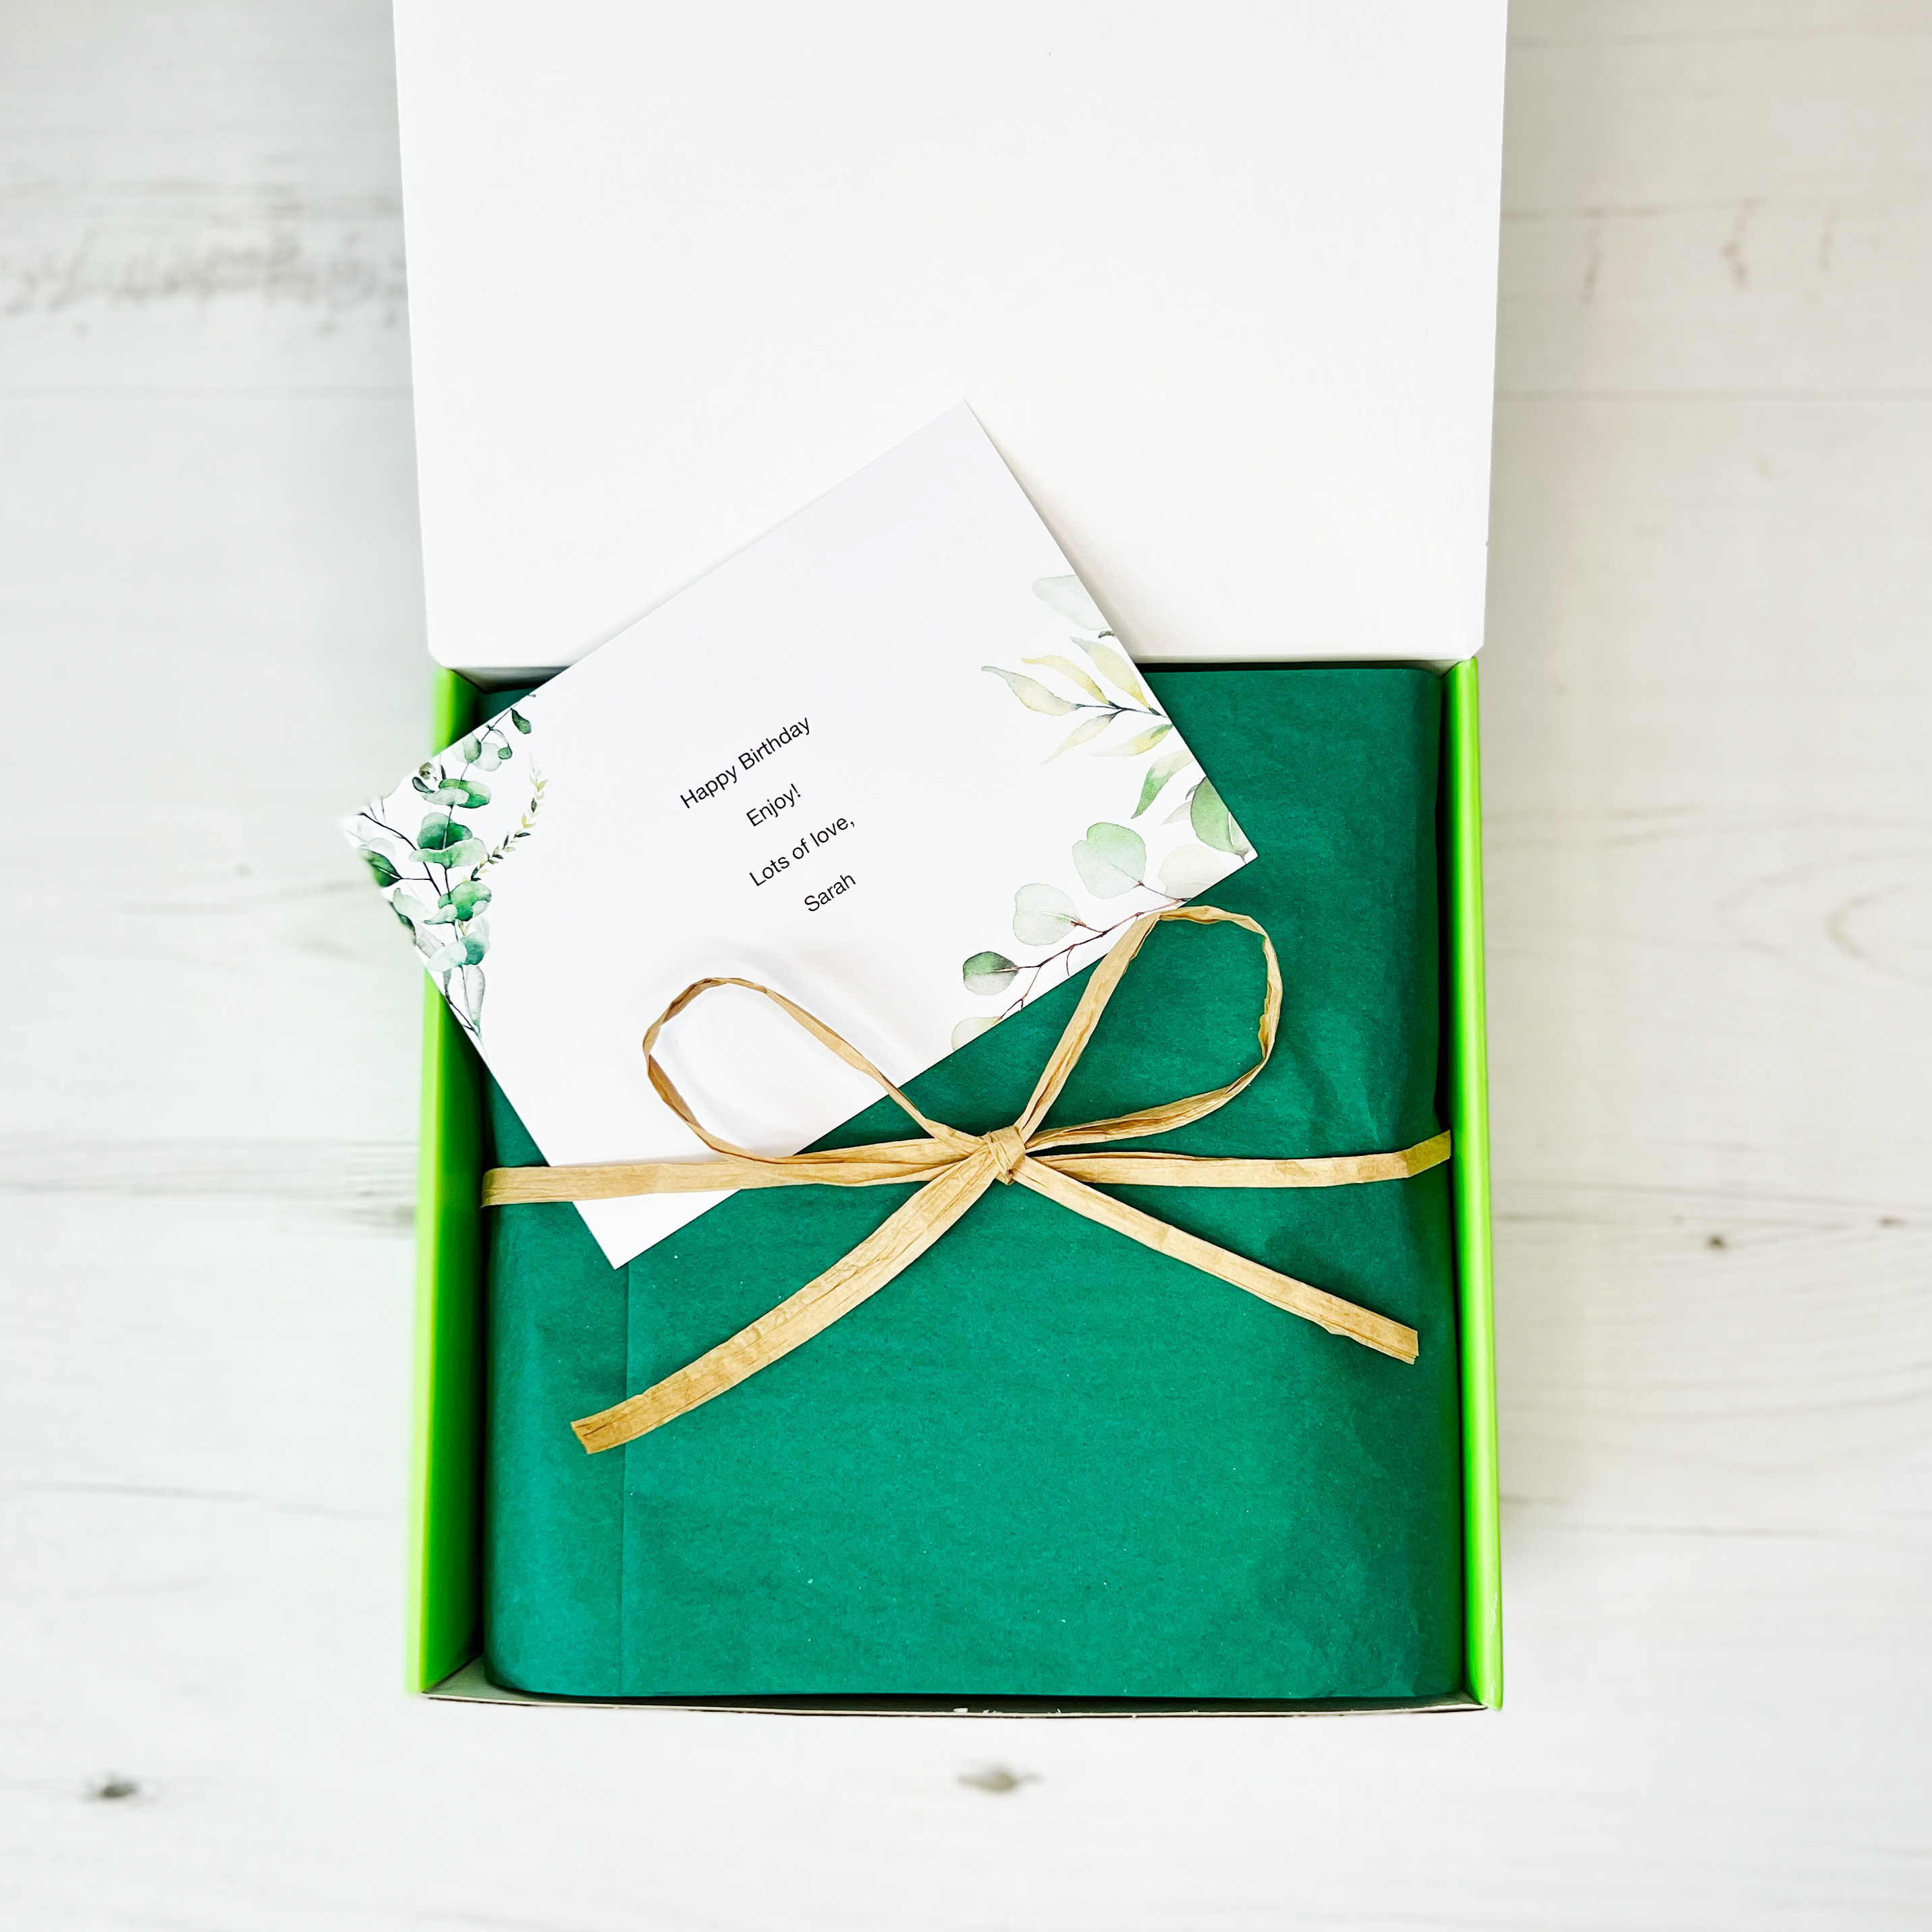 Vegan Chocolate and Snack Hamper Gift Box